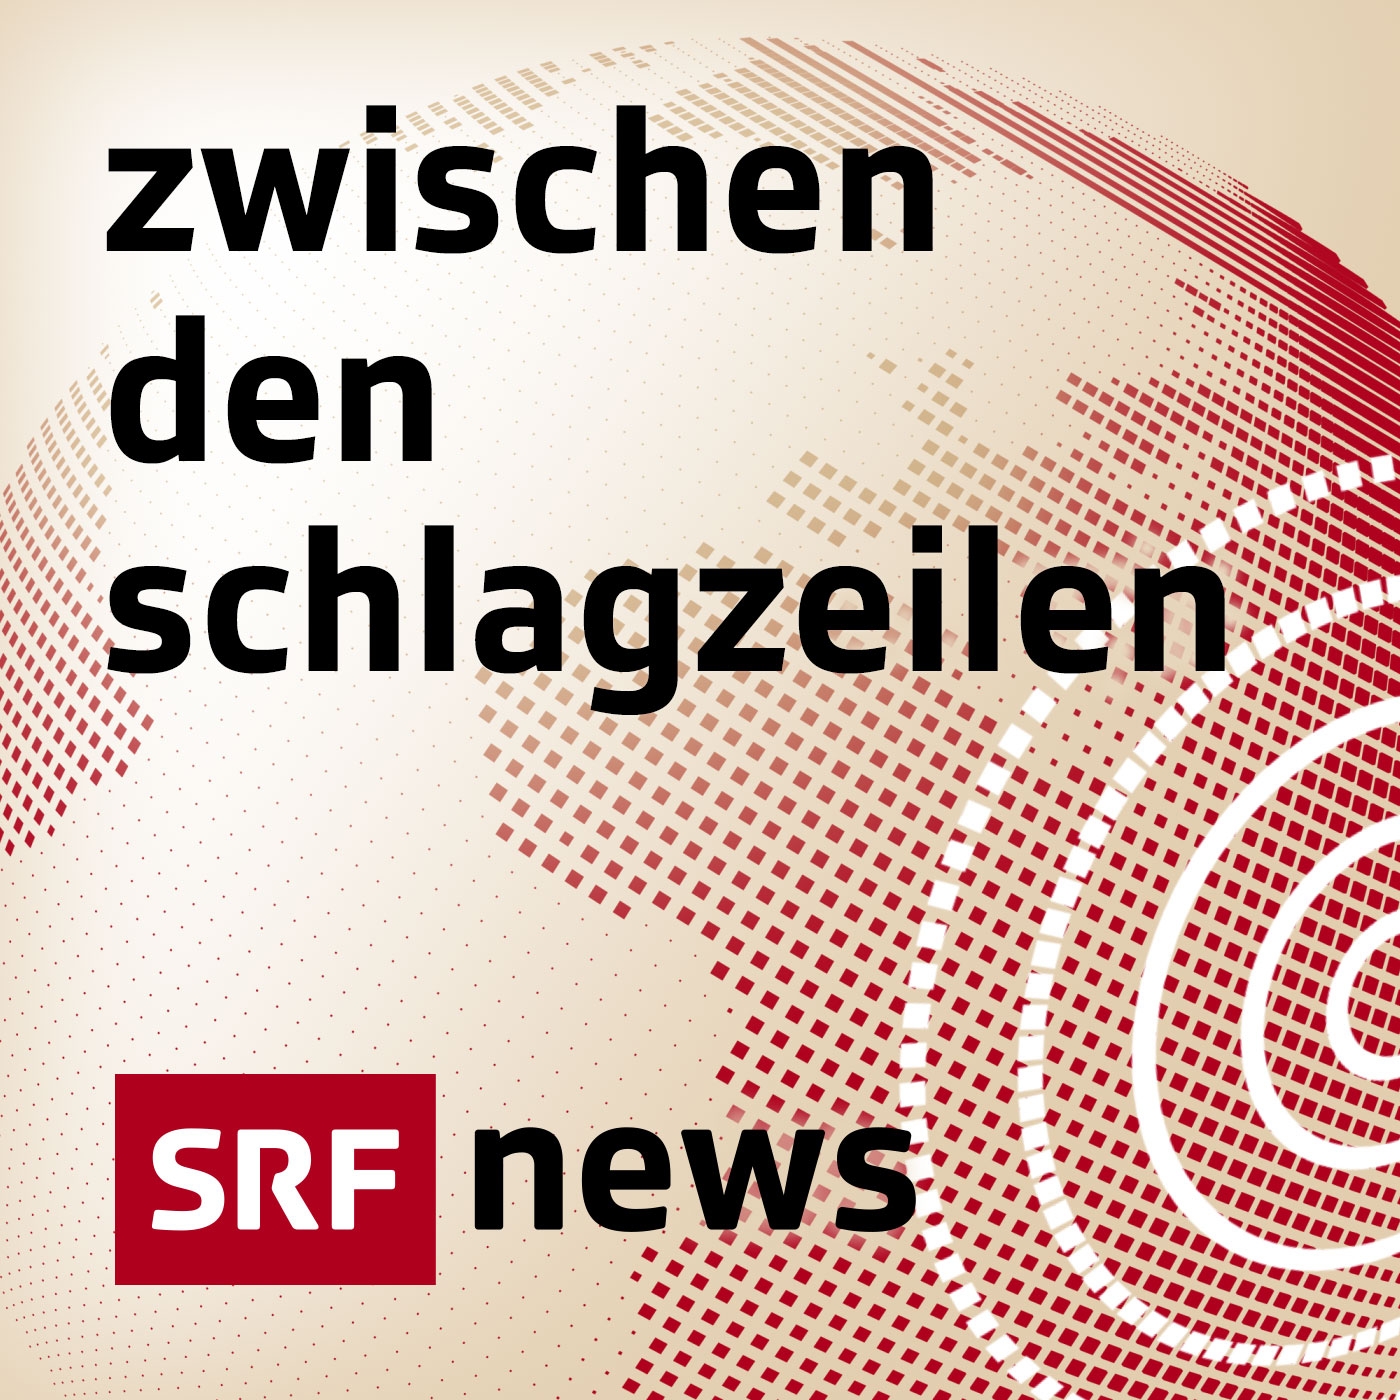 Zwischen den Schlagzeilen:Schweizer Radio und Fernsehen (SRF)